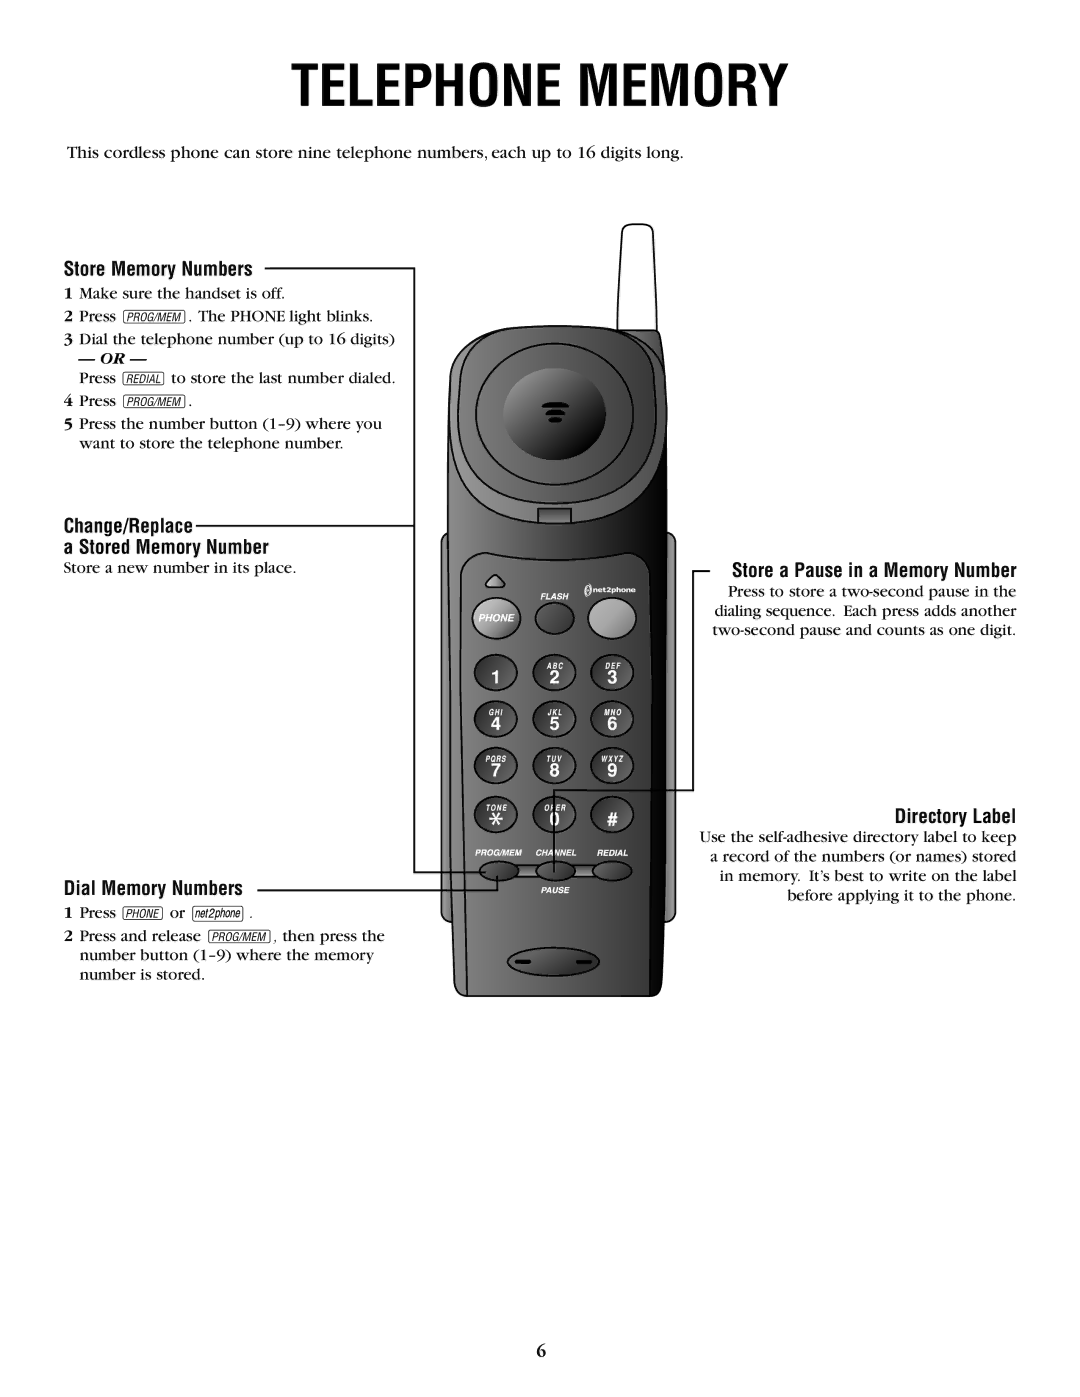 AT&T 6200 user manual Telephone Memory 